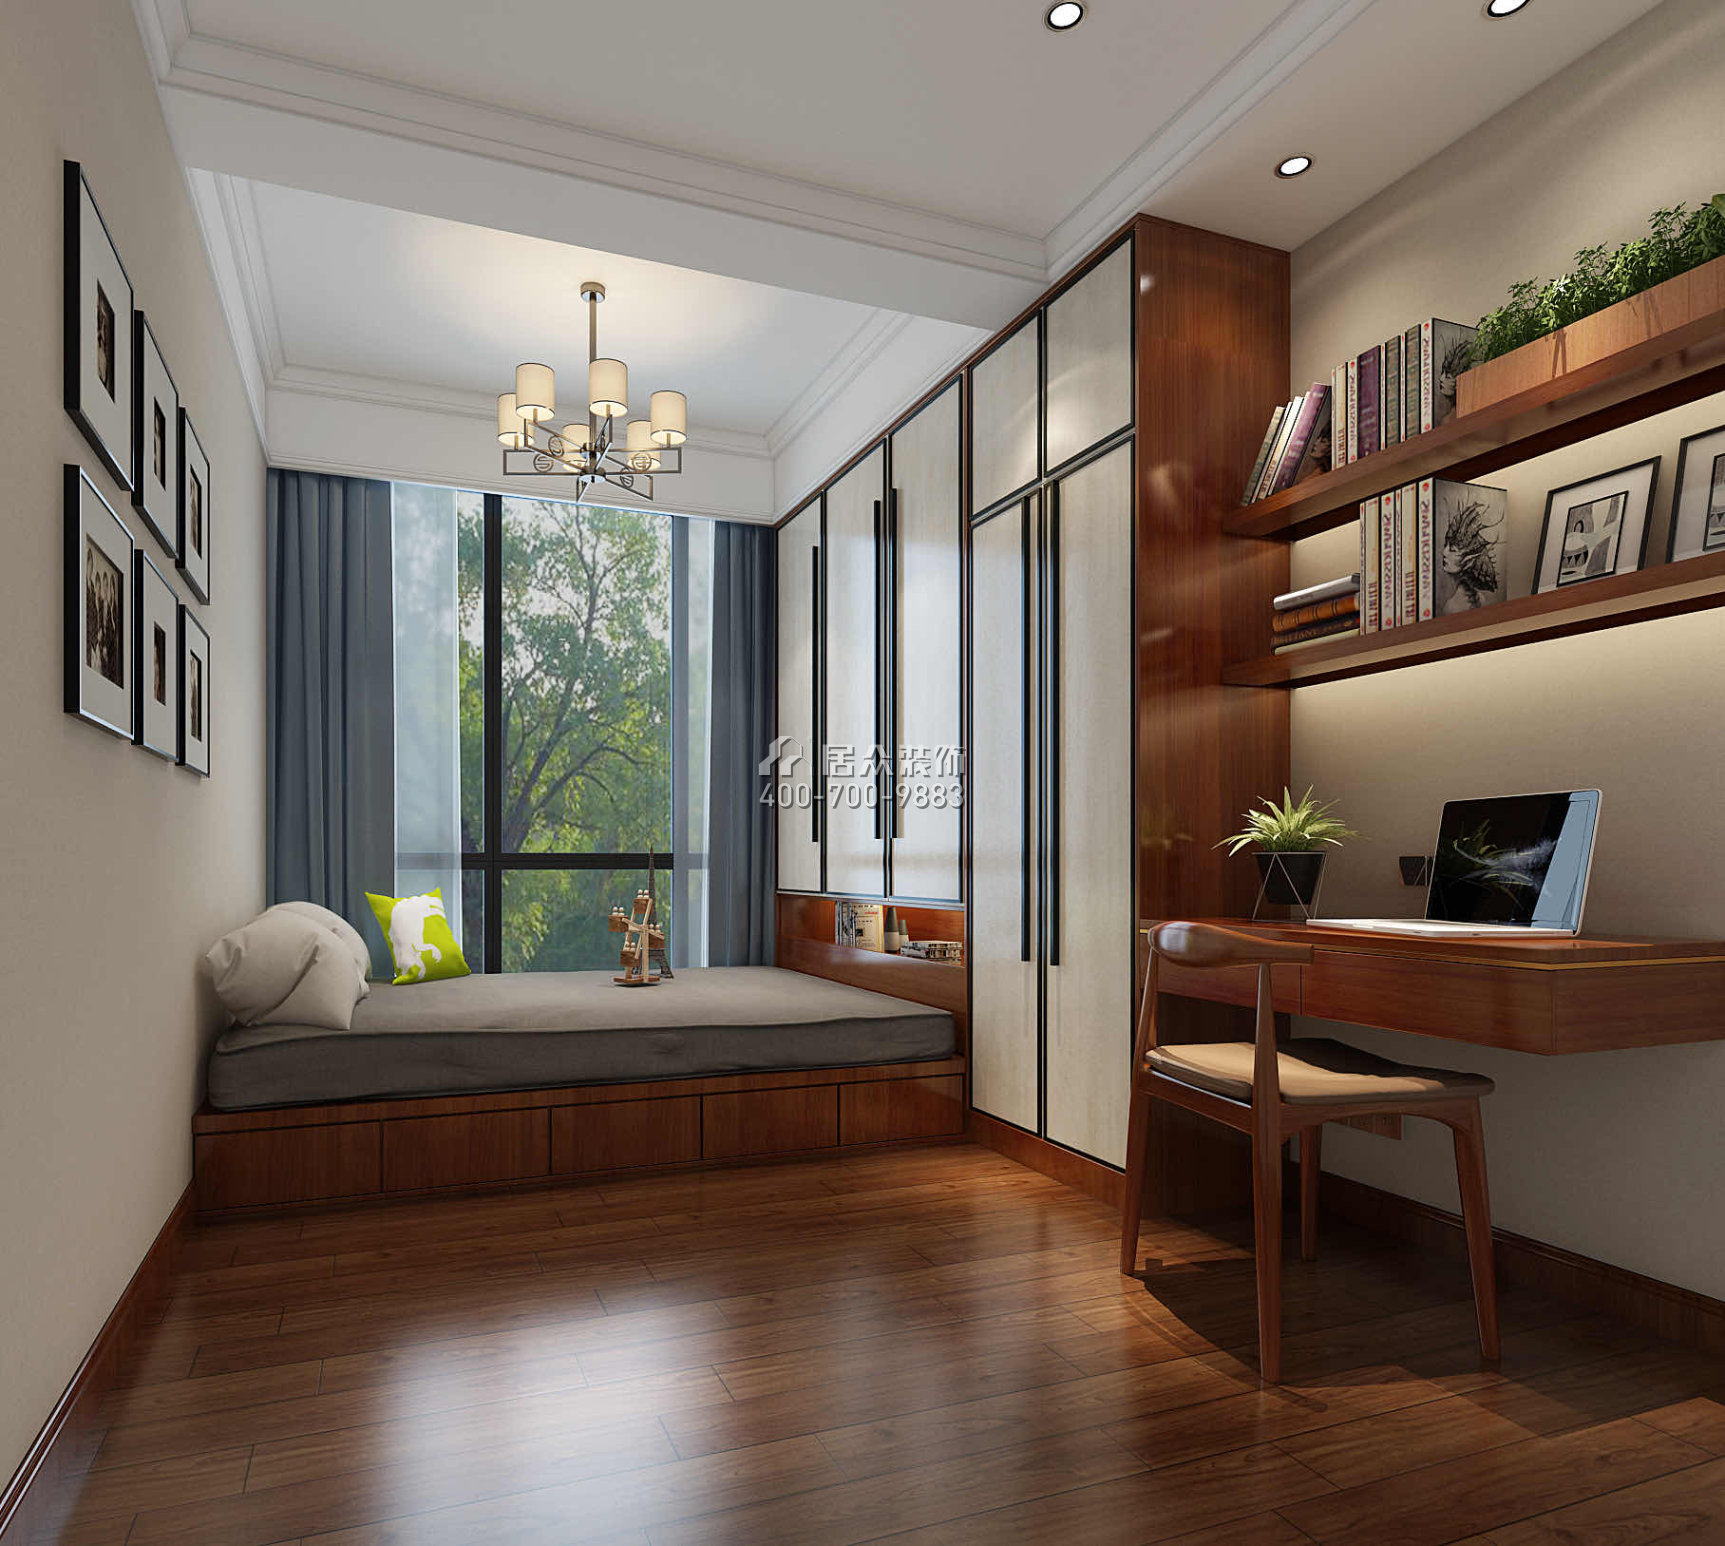 嘉華星際灣180平方米中式風格平層戶型臥室書房一體裝修效果圖